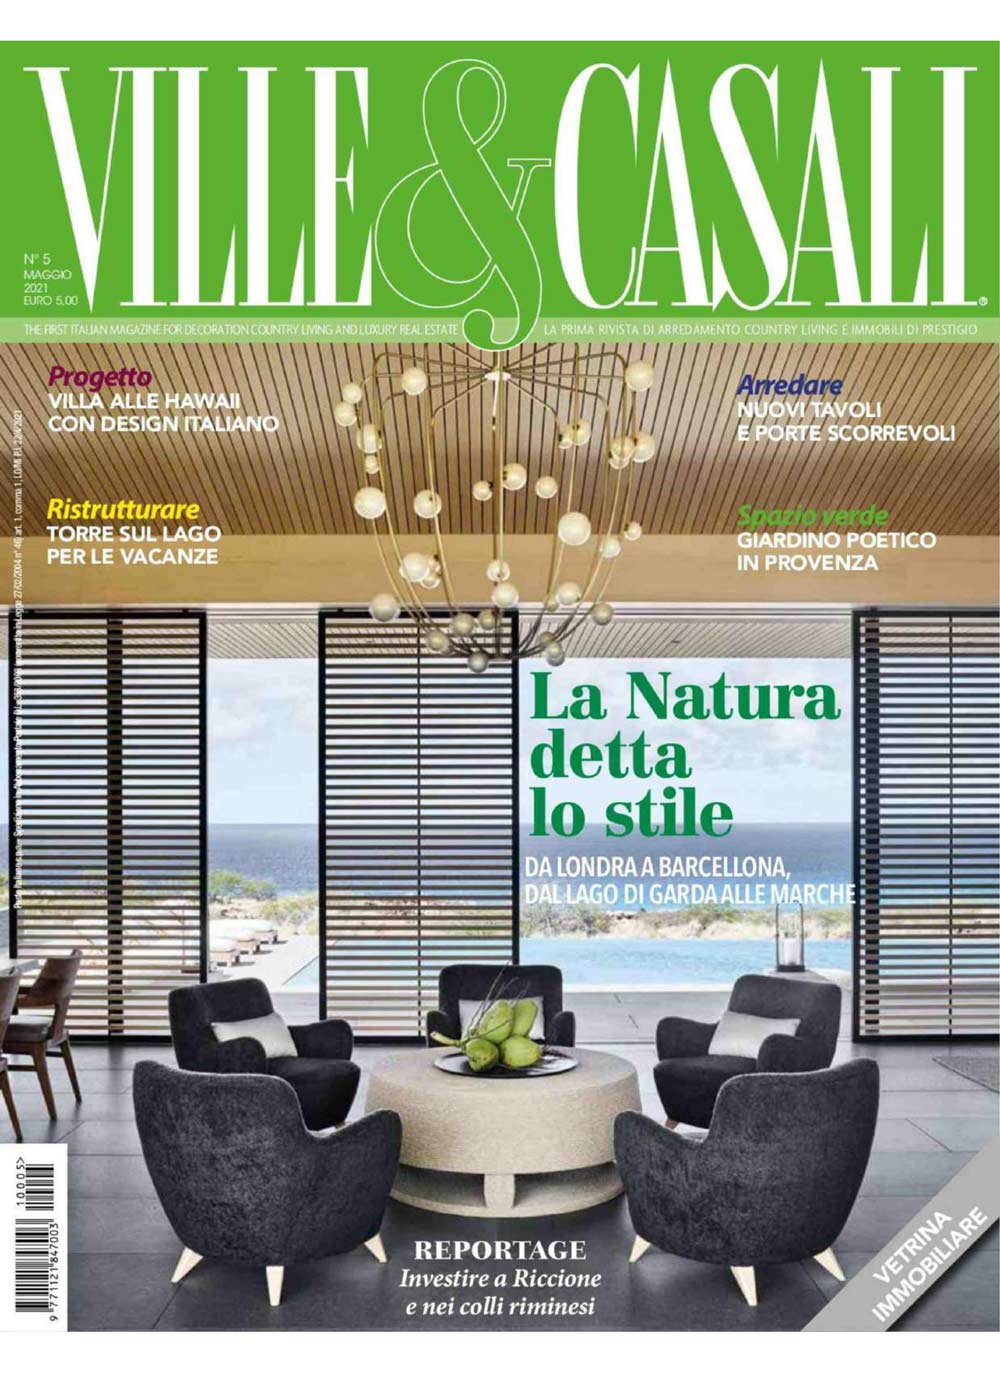 Обложка Ville&Casali - май 2021 г.